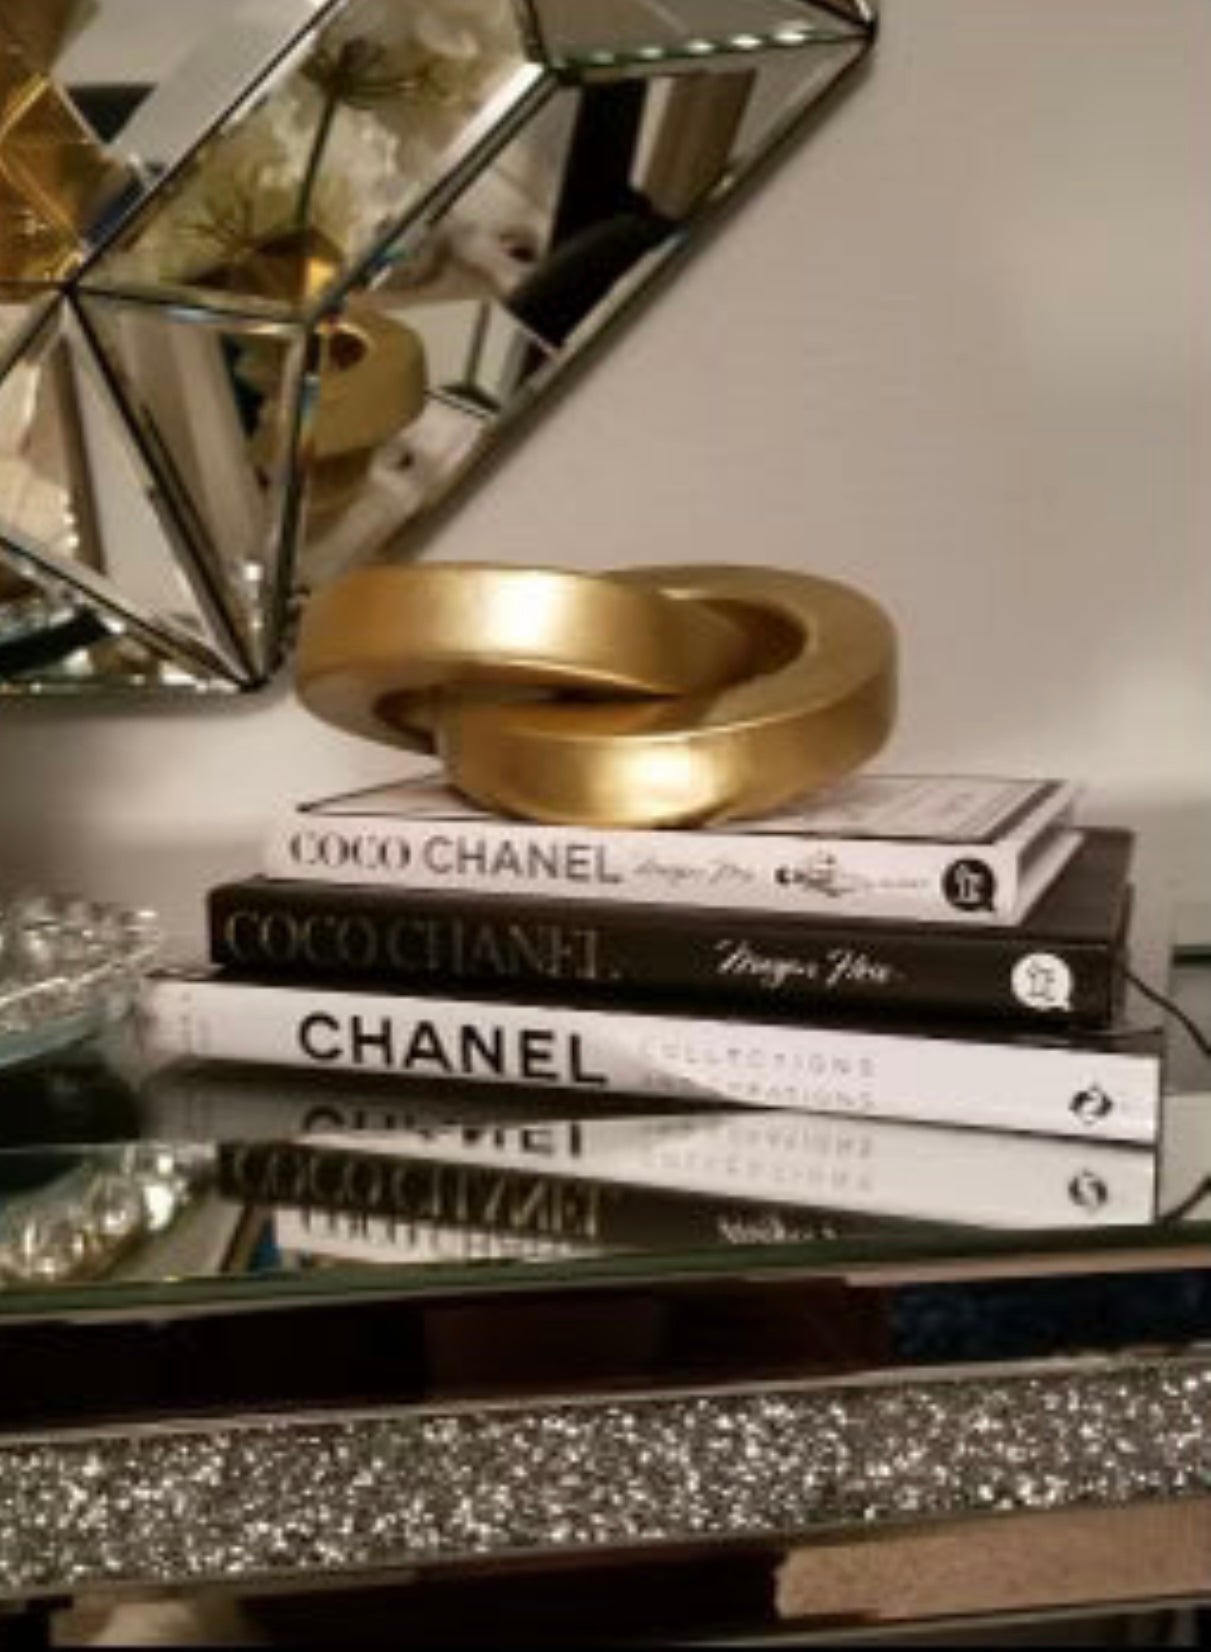 Decor Book - Coco Chanel